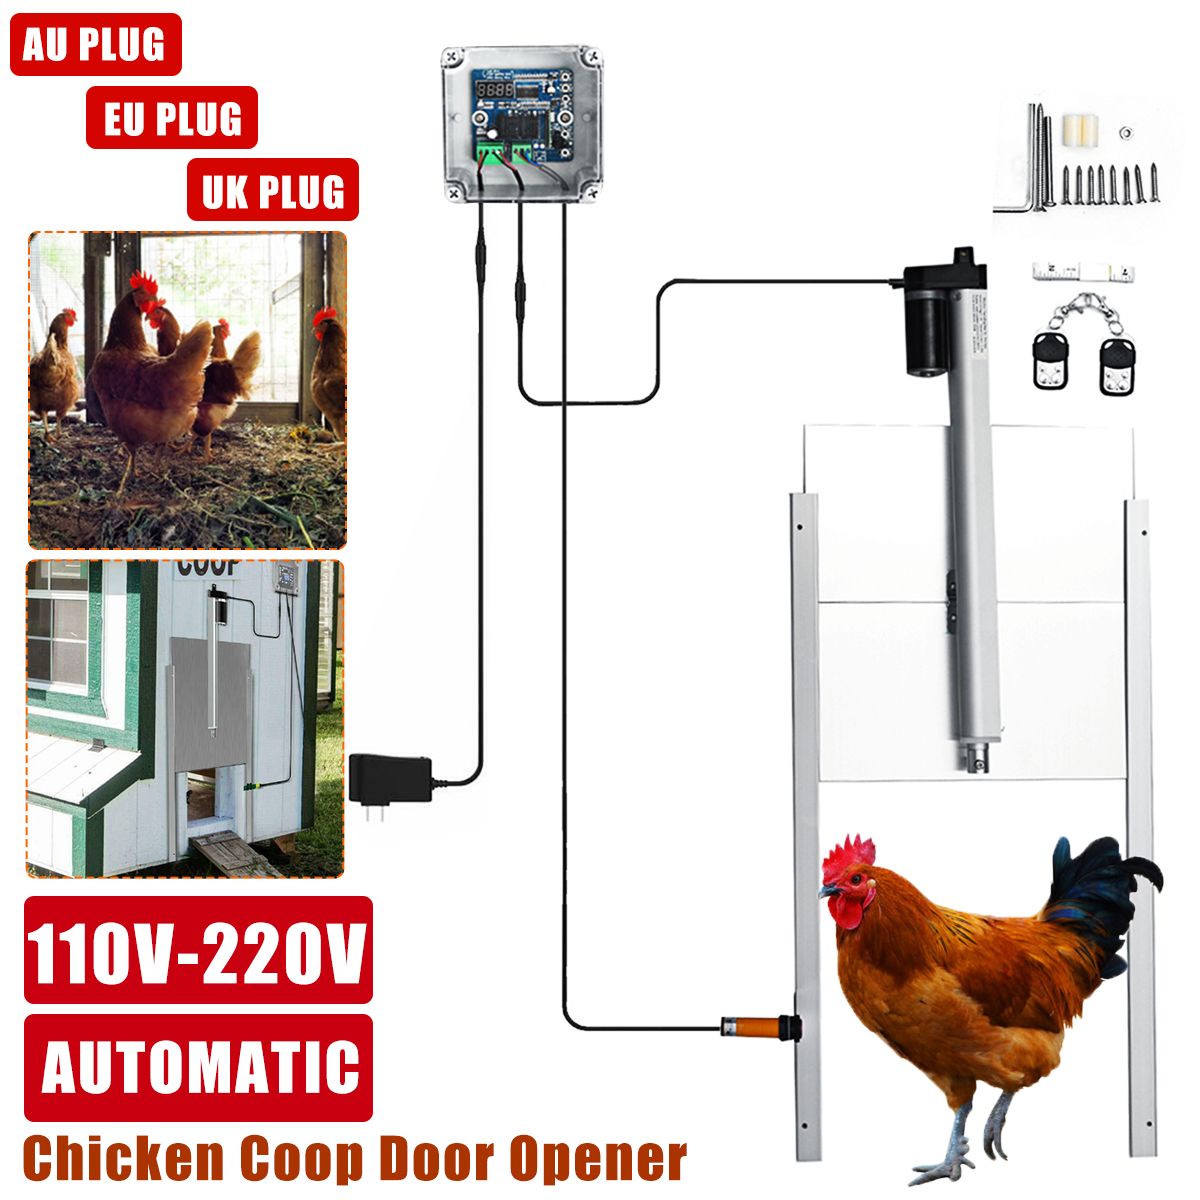 110V-220V-66W-Metal-Automatic-Chicken-Coop-Door-Opener-EU-Plug-1713506